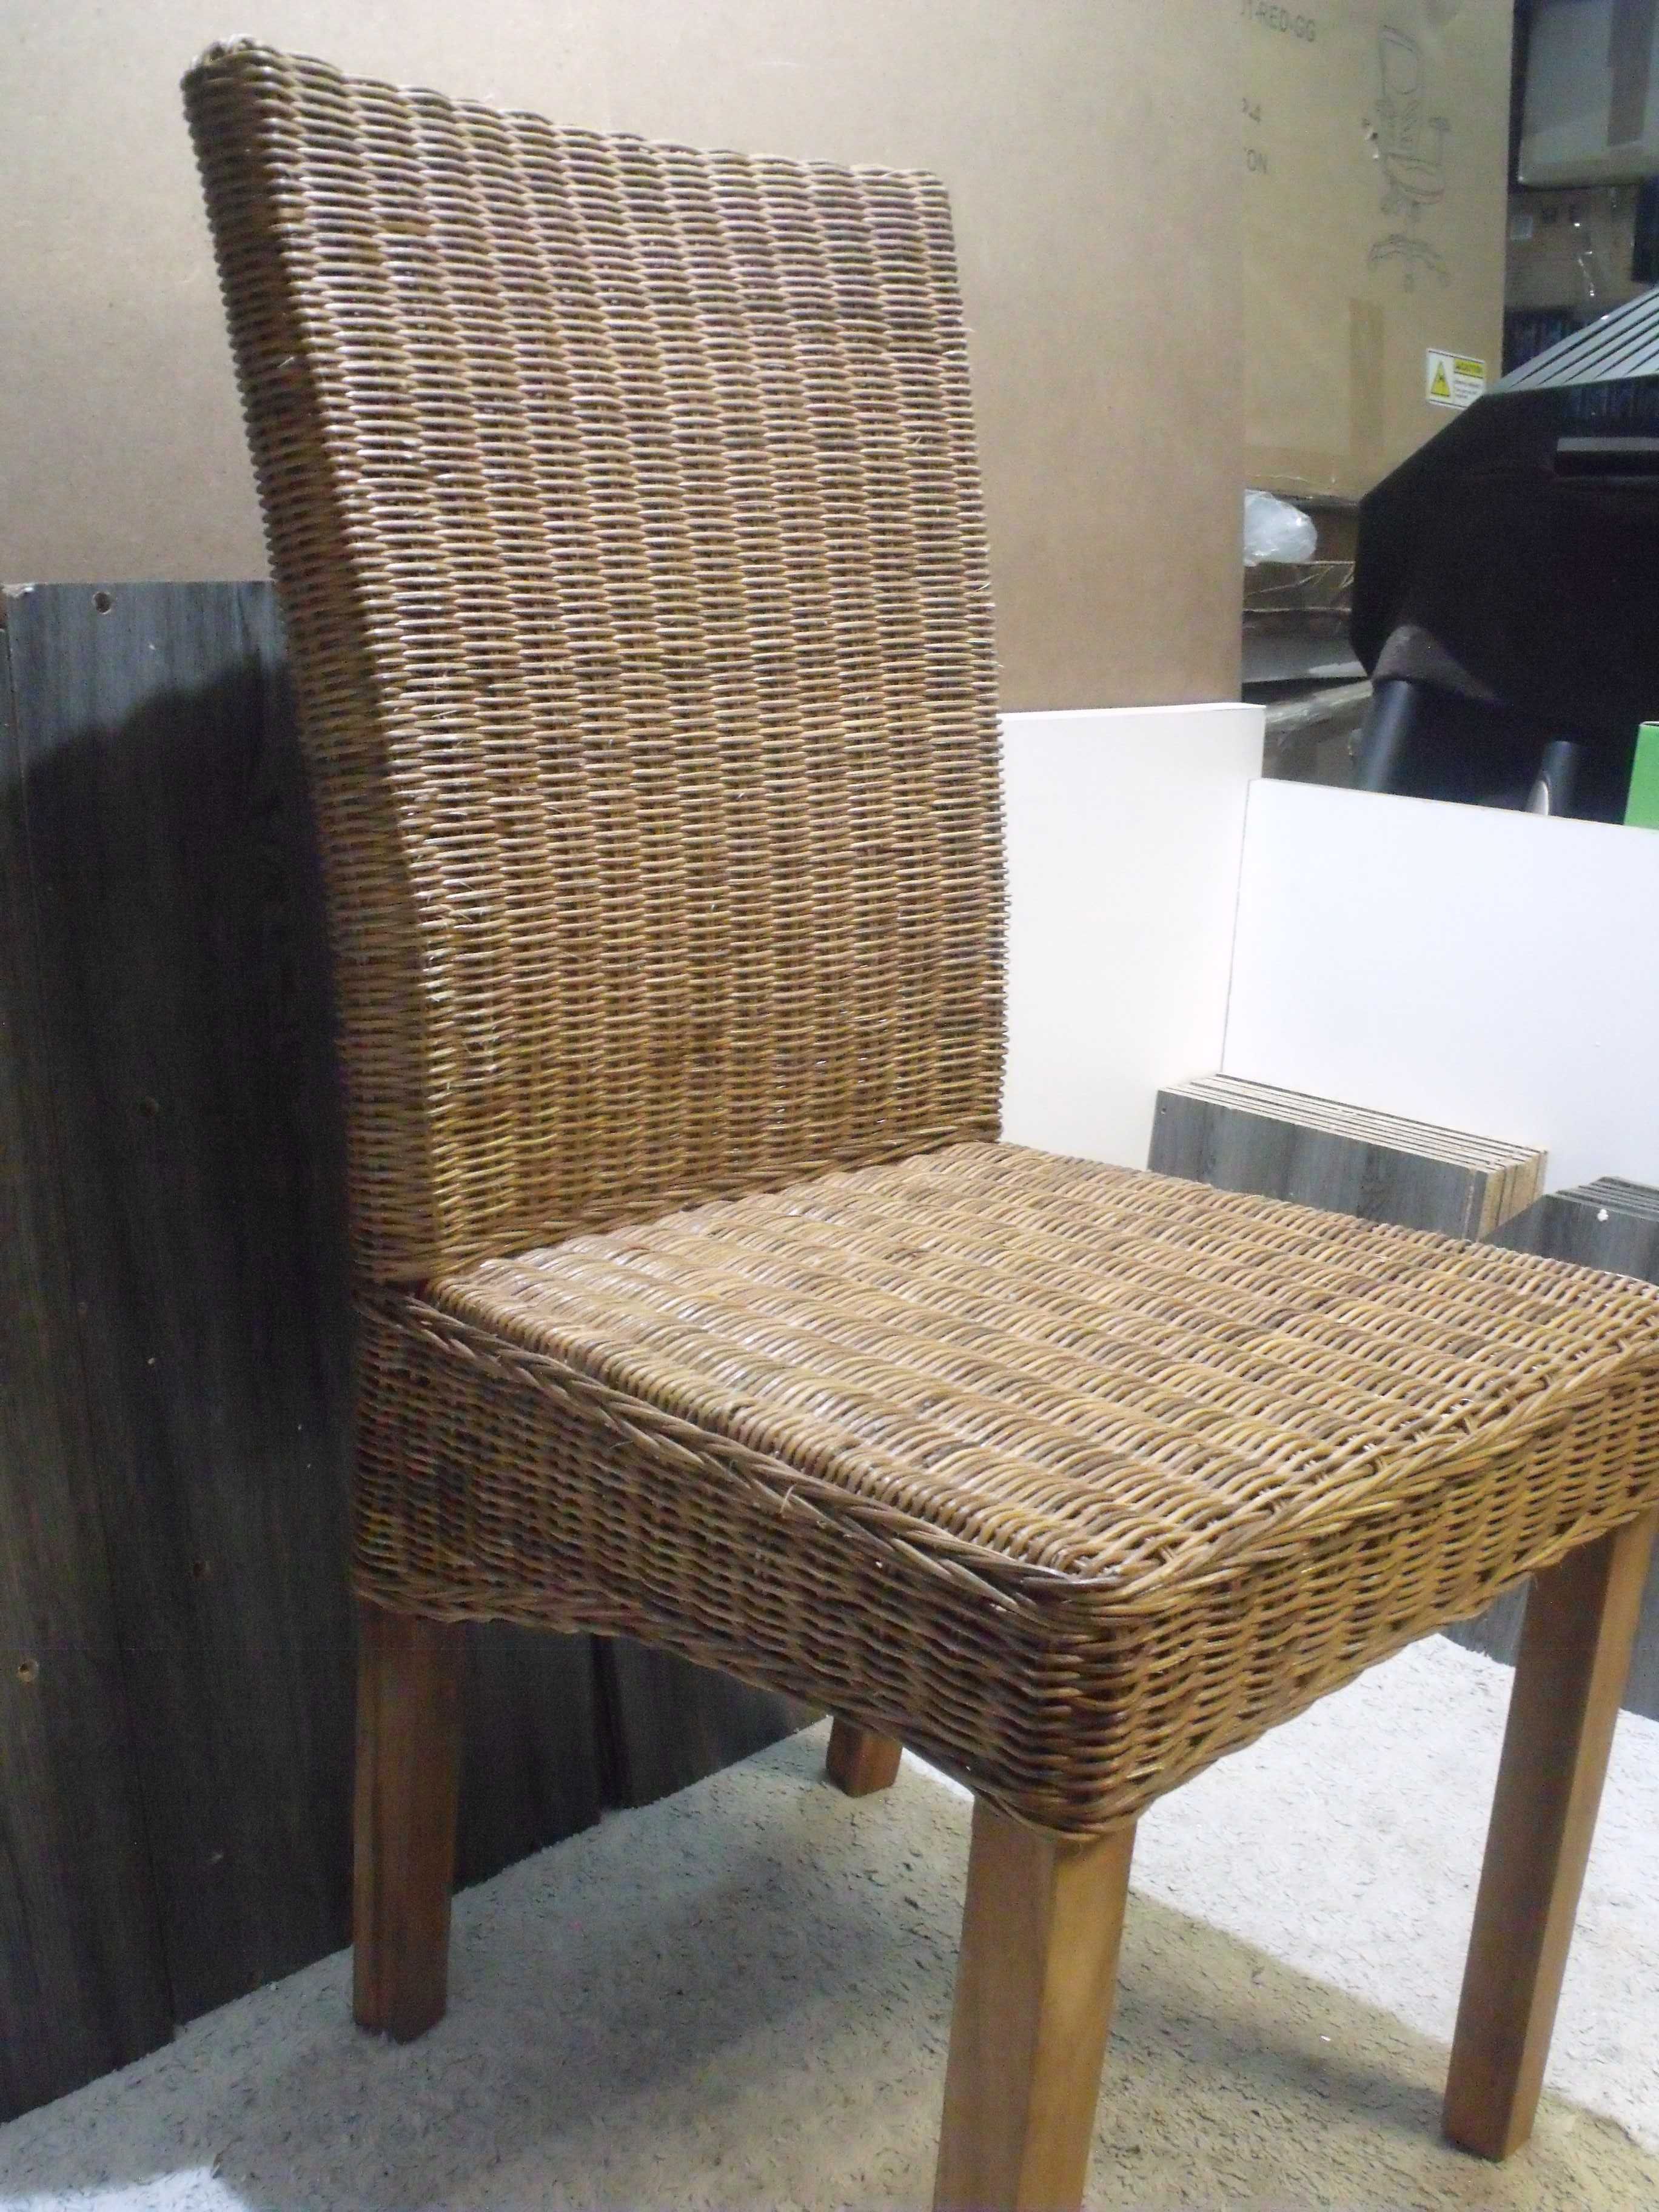 Krzesło z rattanu naturalnego wikliny i drewna, drewniane nogi